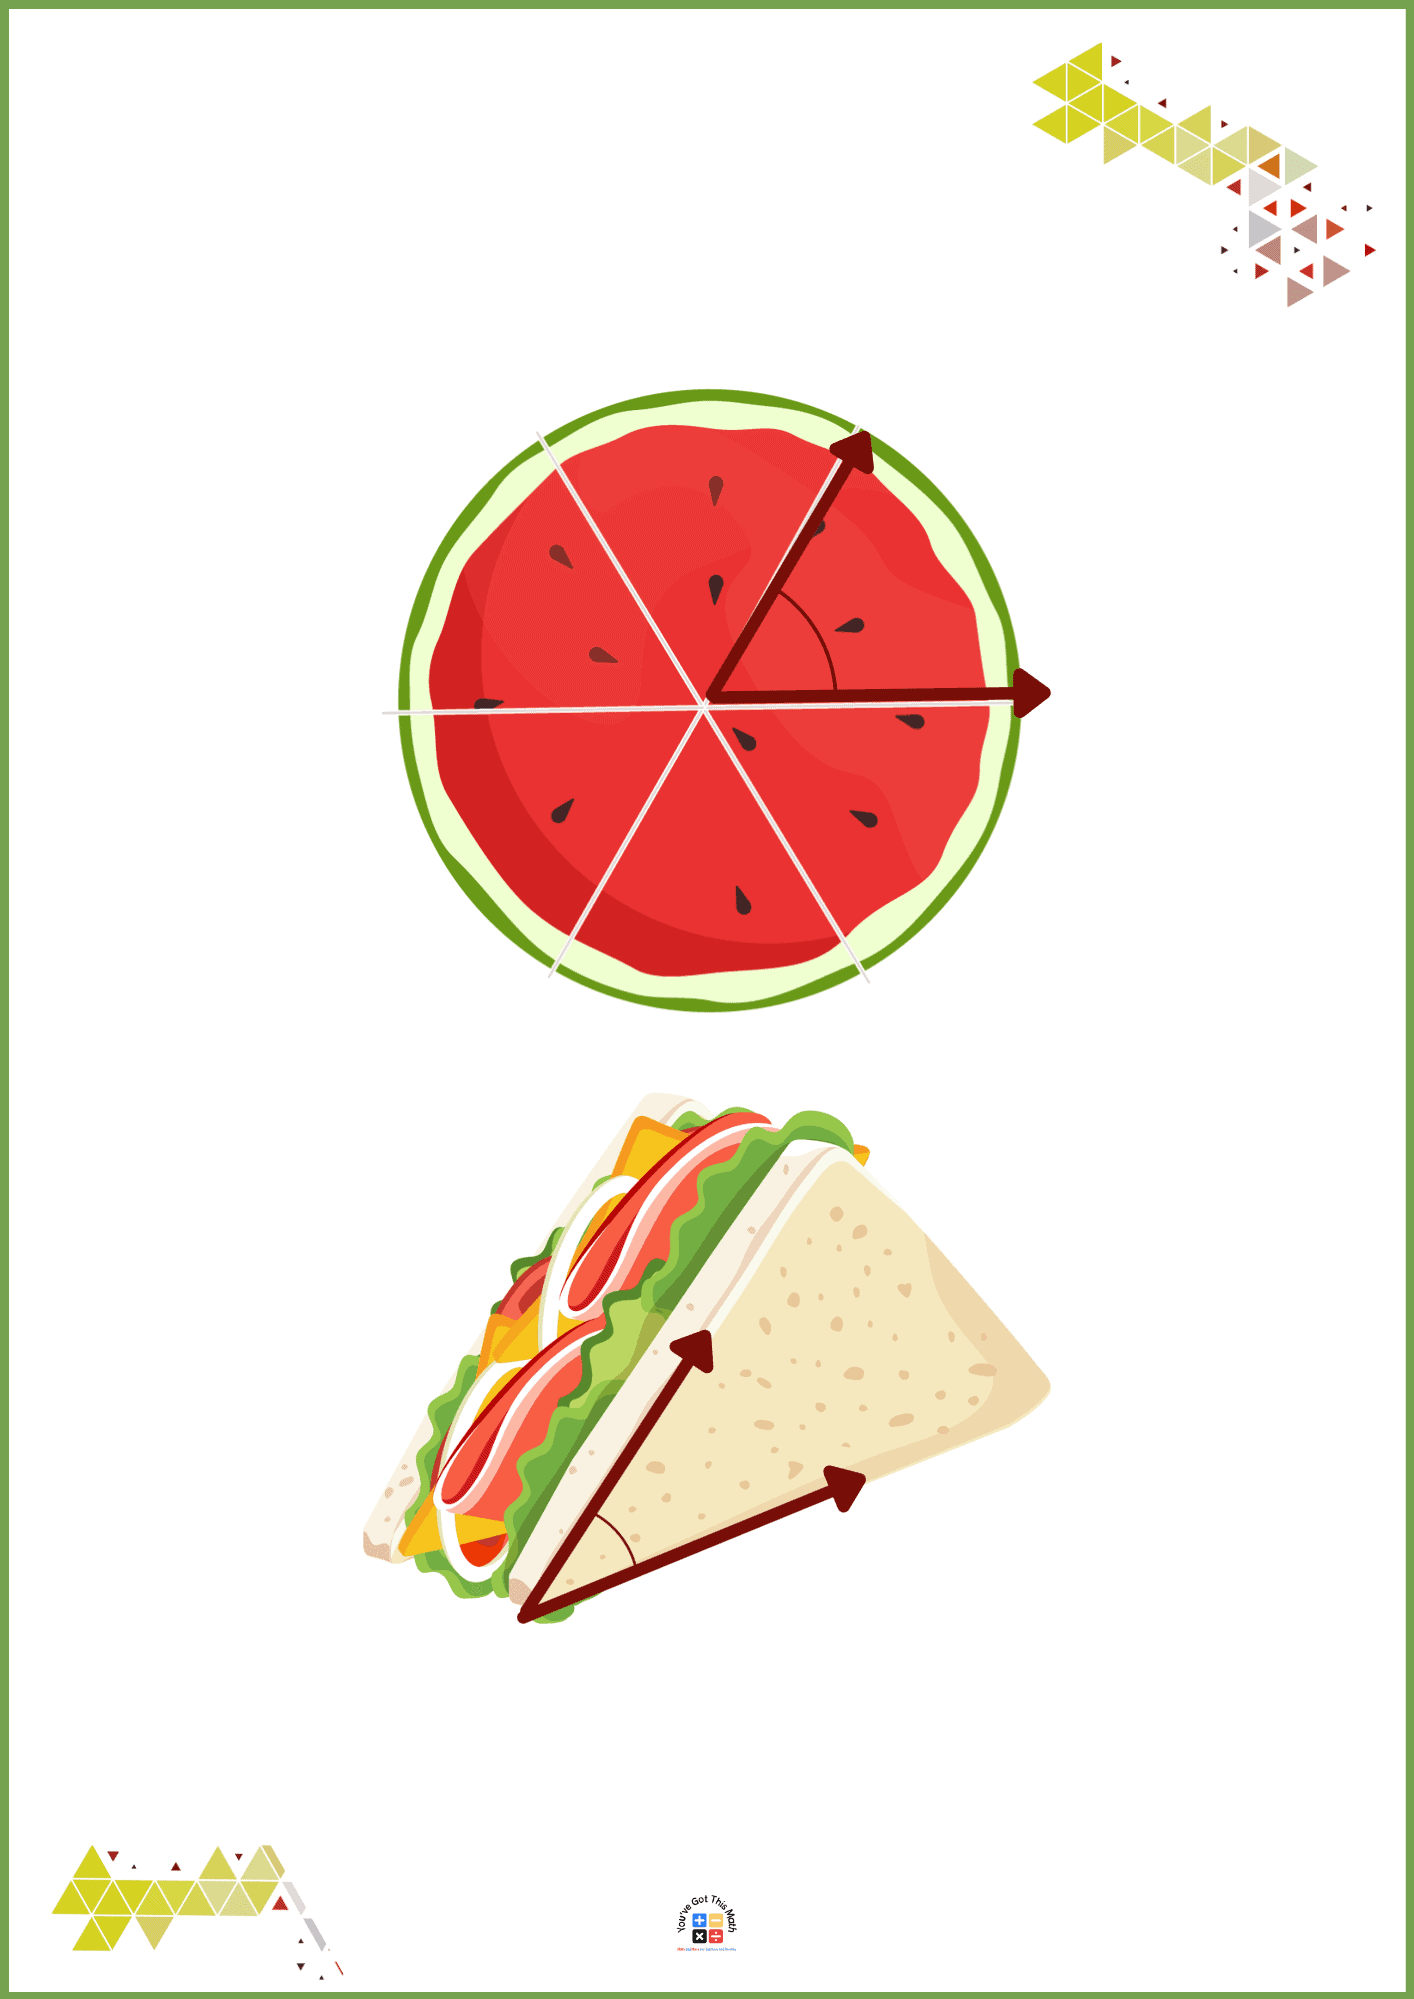 Watermelon and Sandwich Slice of Acute Angle Shape